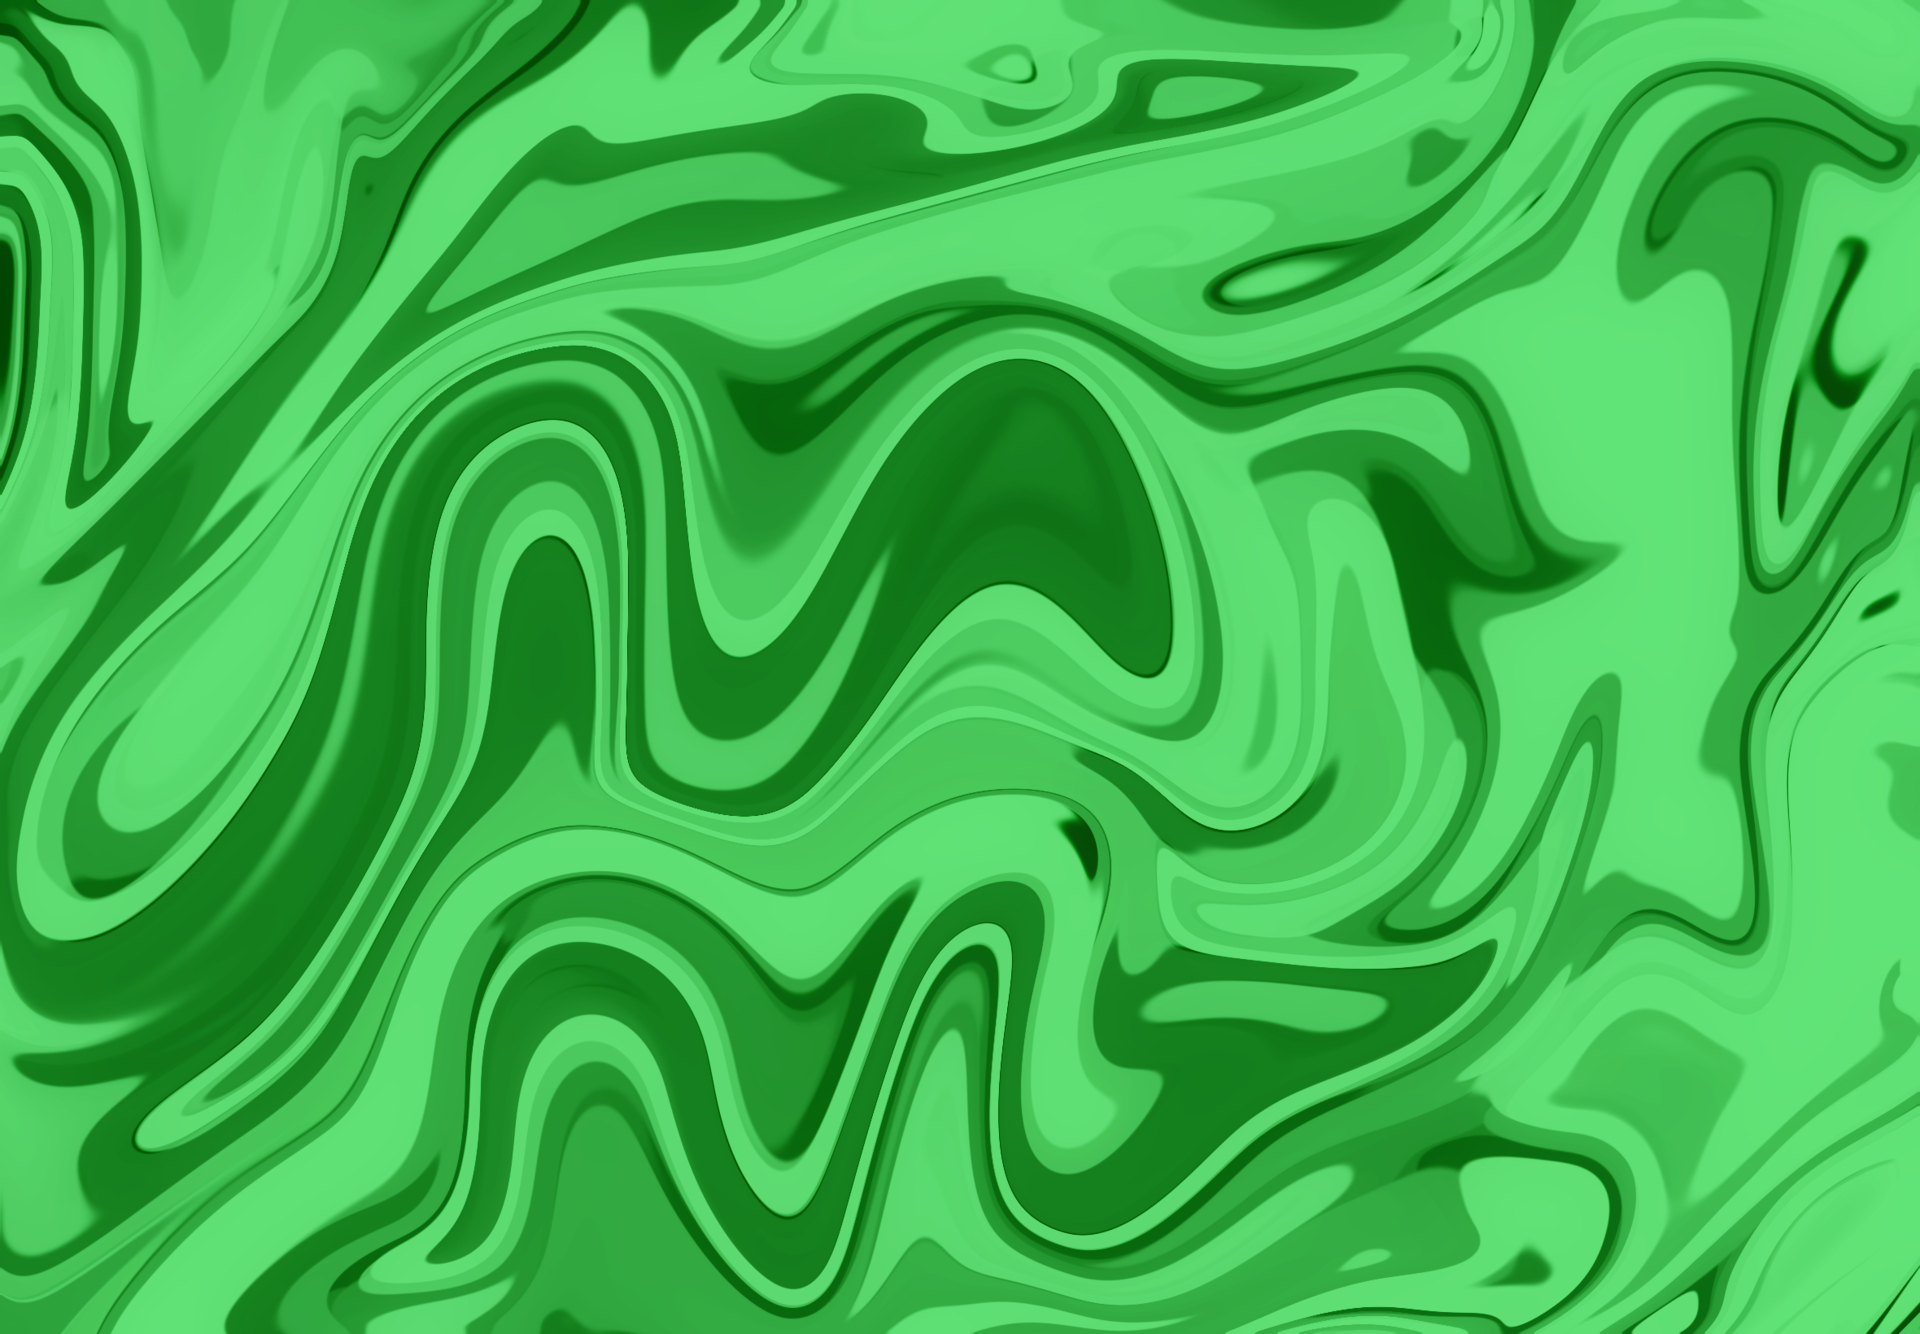 Fluid_Green, width 1920, jpg